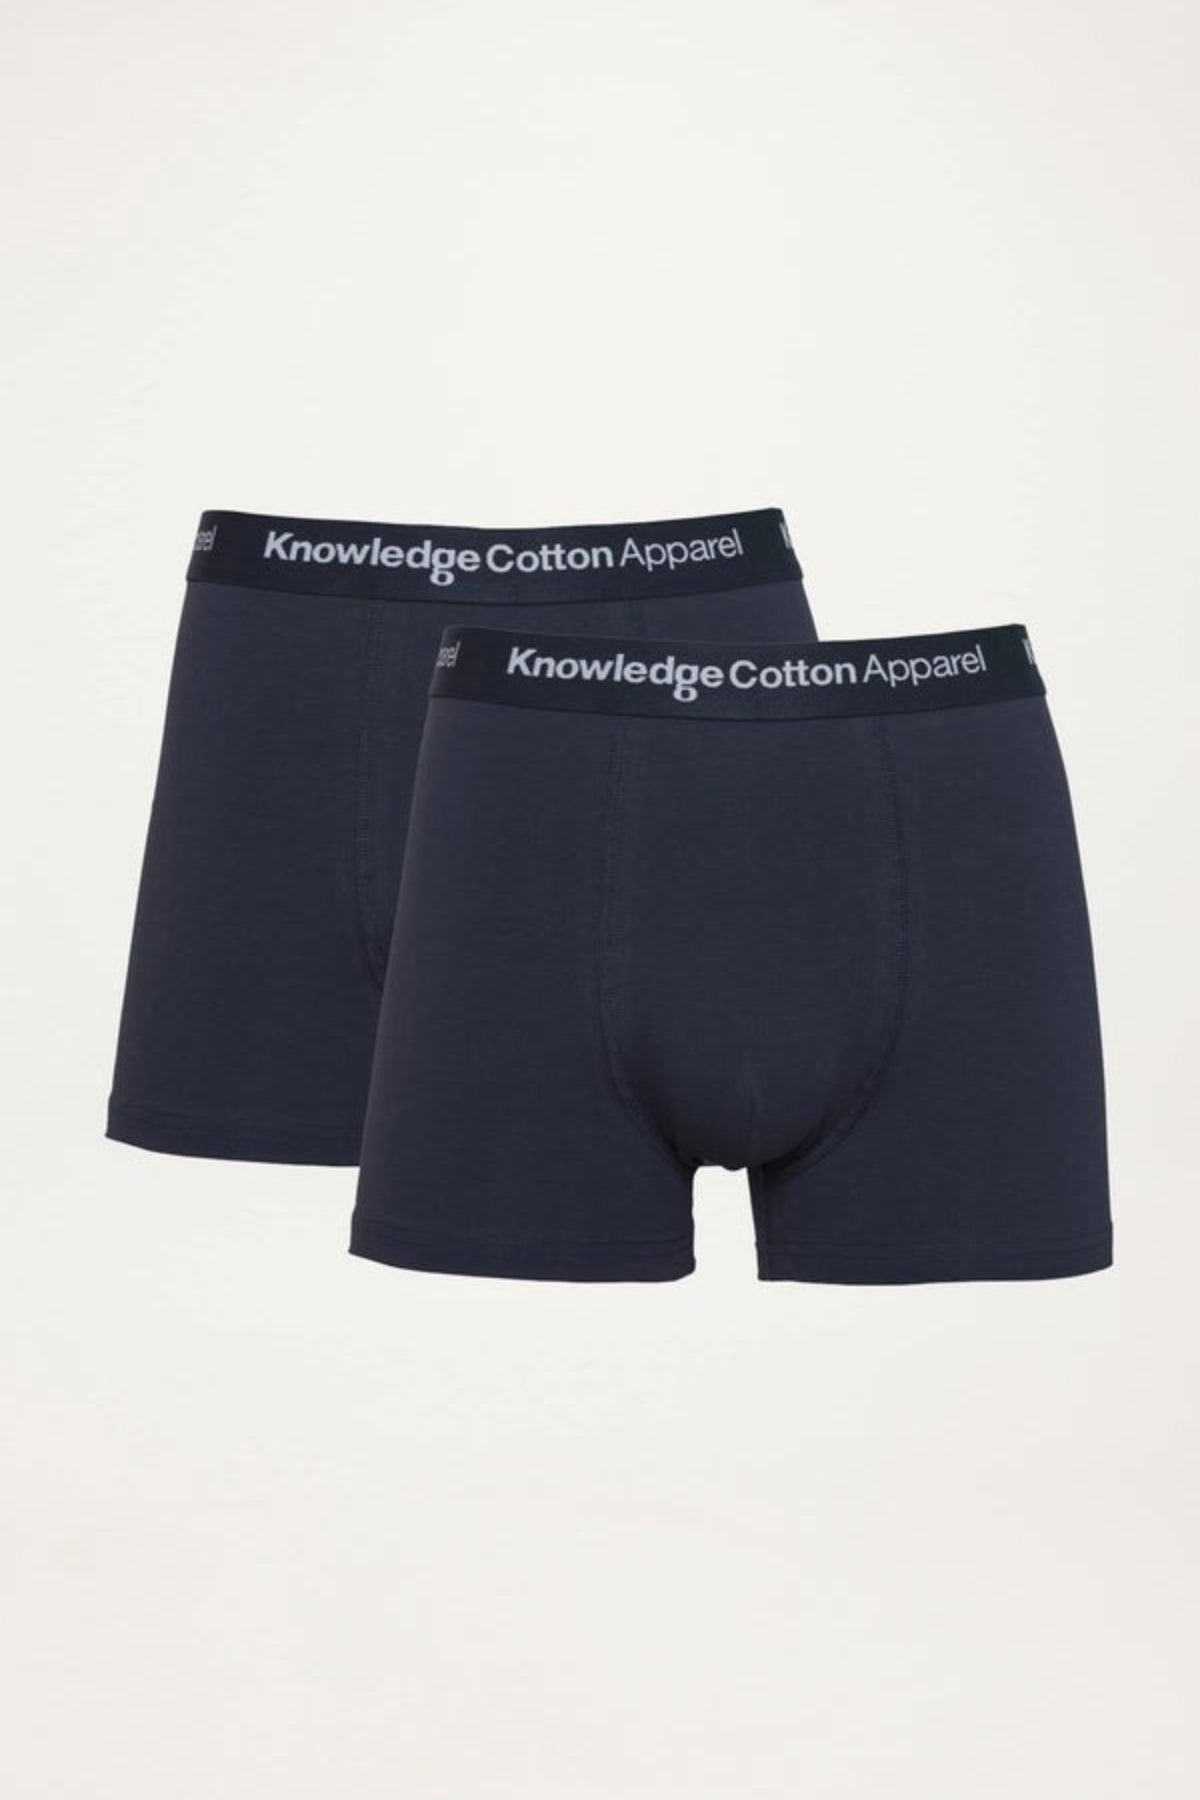 2 pack underwear - Knowledge Cotton Apparel